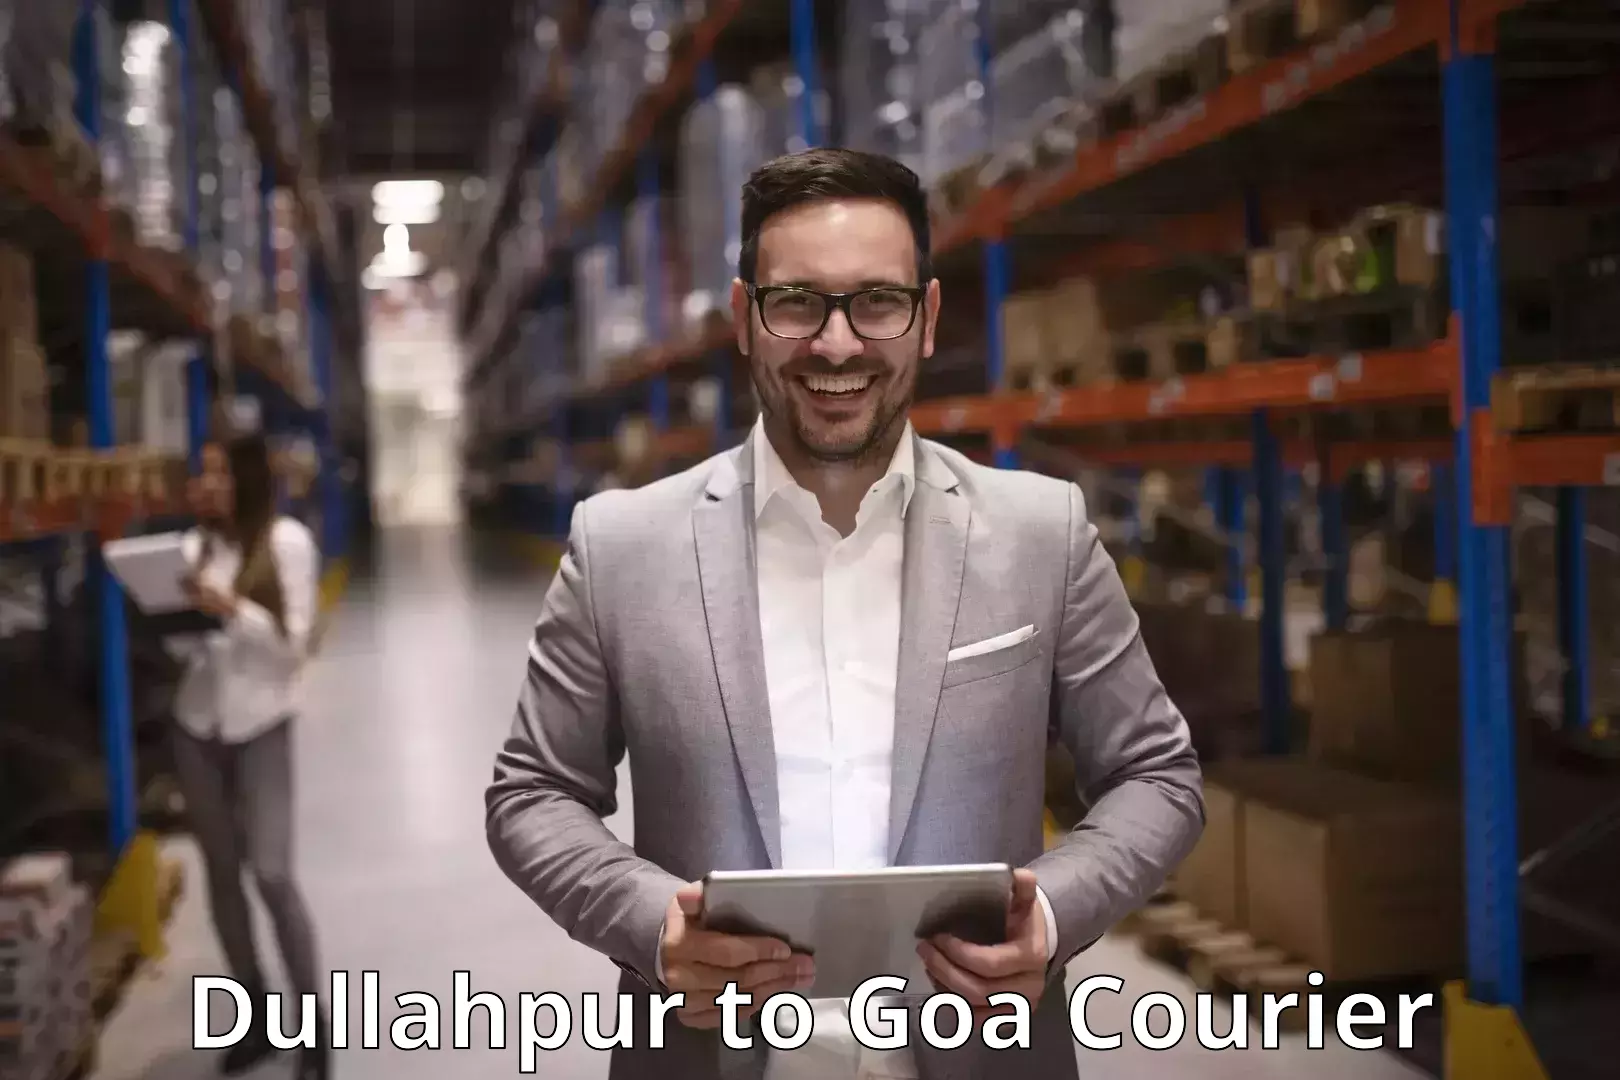 Courier service comparison Dullahpur to NIT Goa